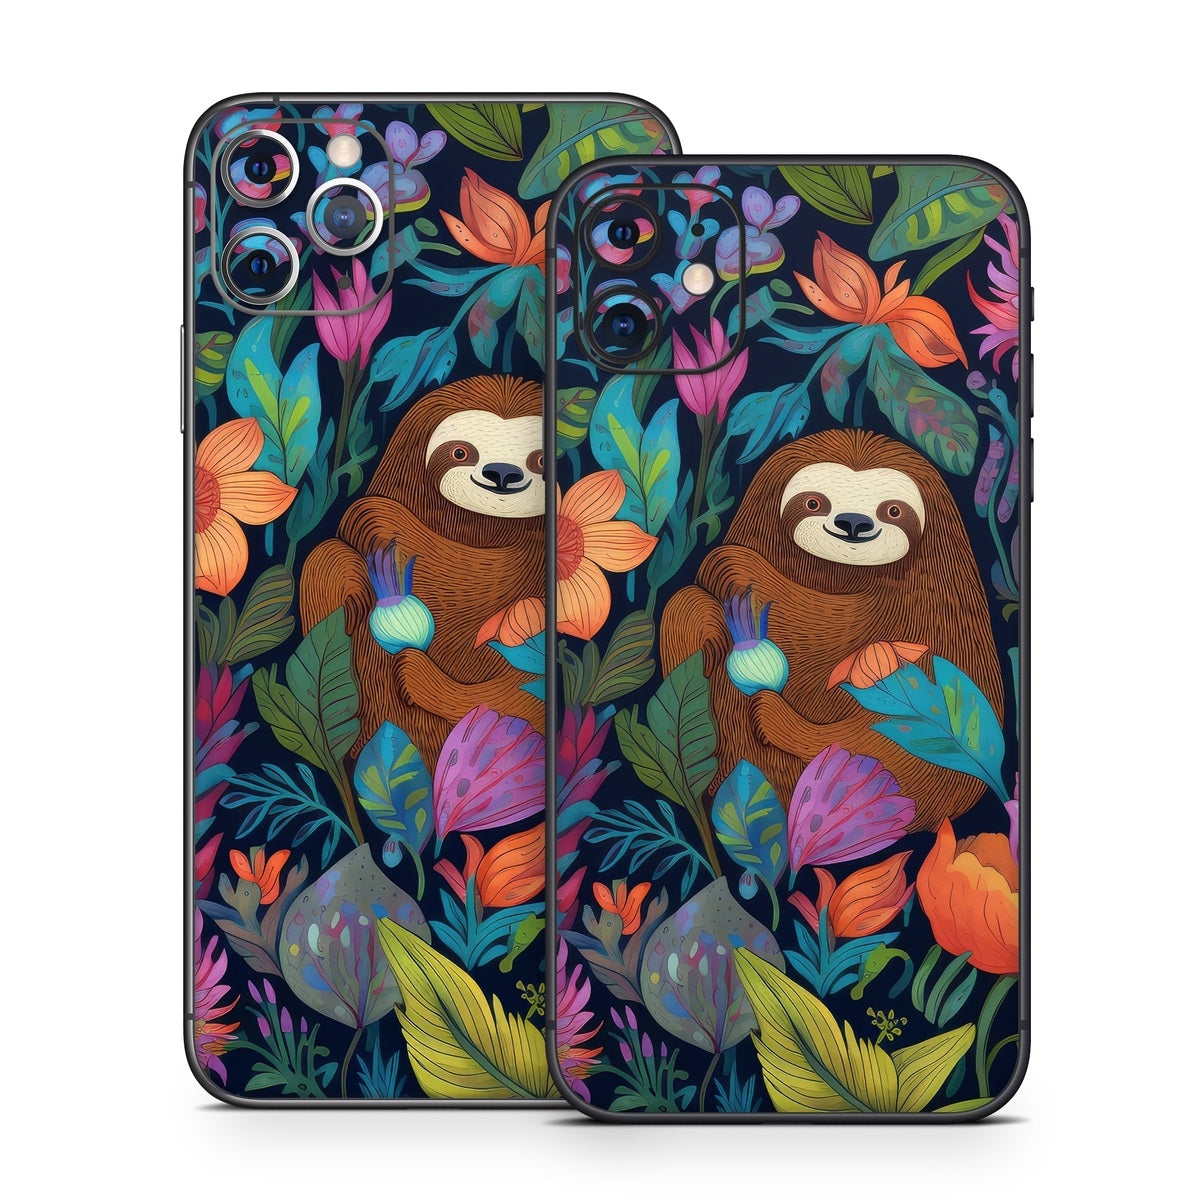 Garden of Slothy Delights - Apple iPhone 11 Skin